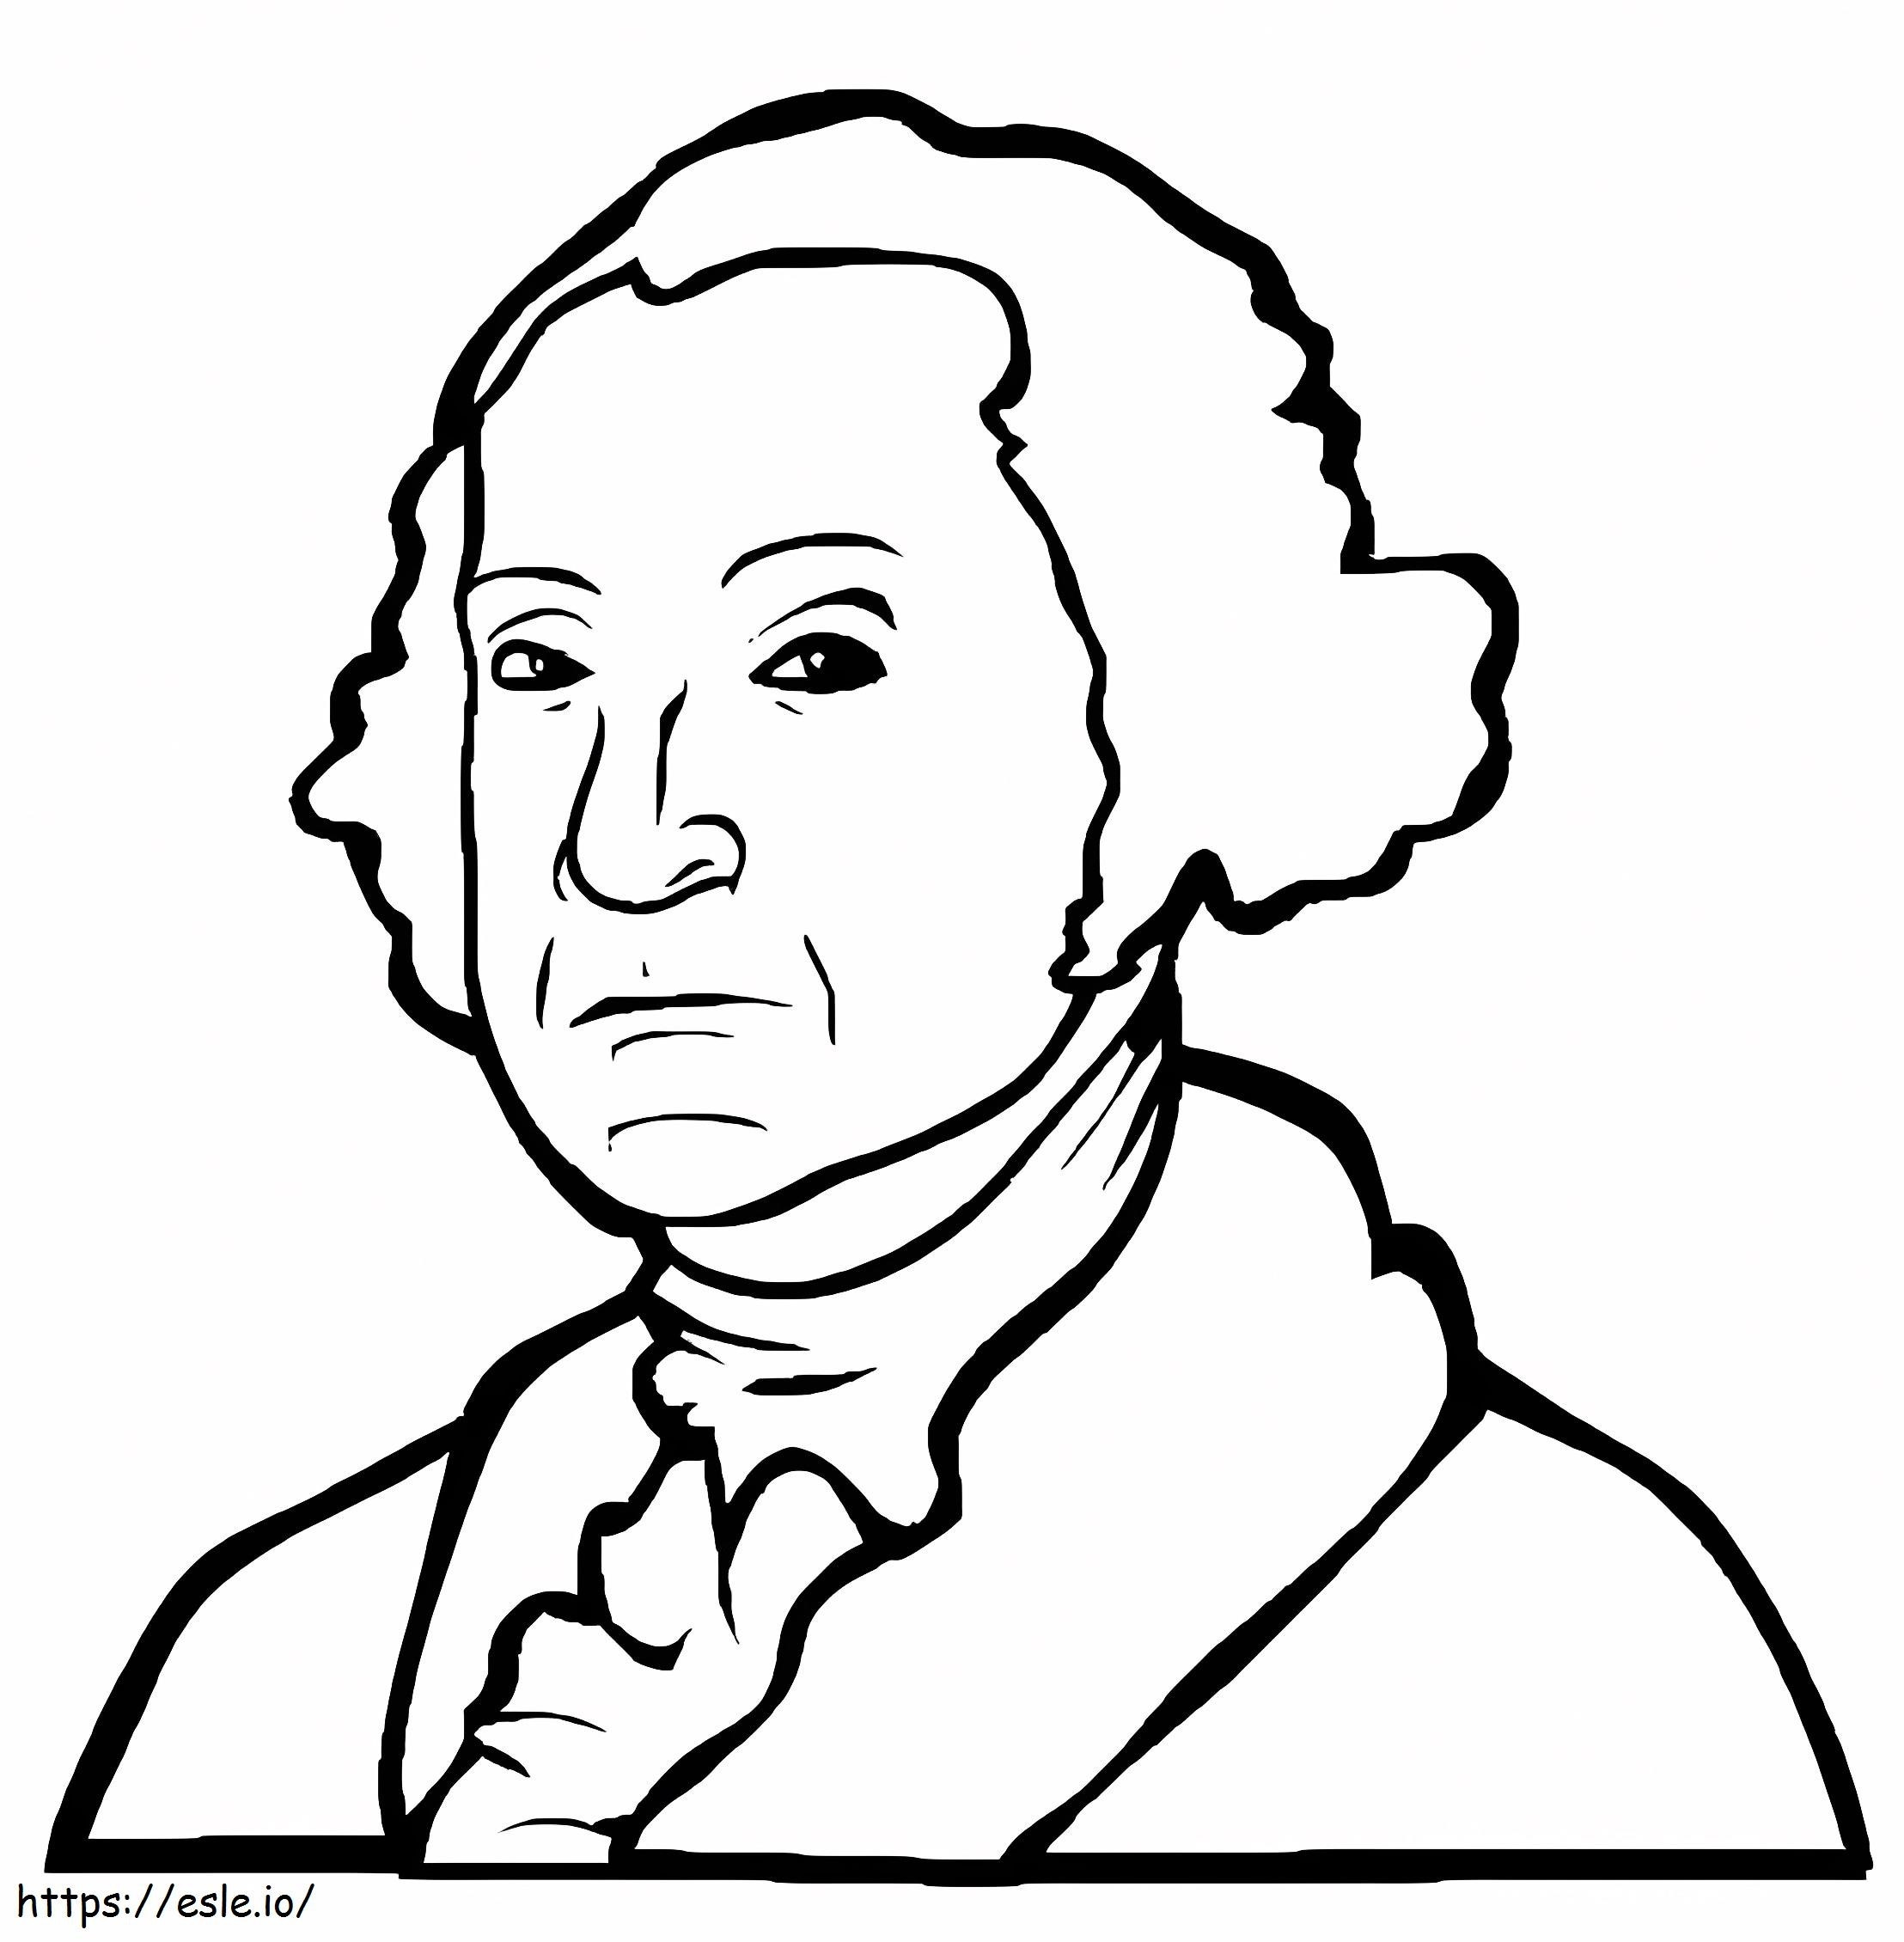 Coloriage Le président américain George Washington à imprimer dessin